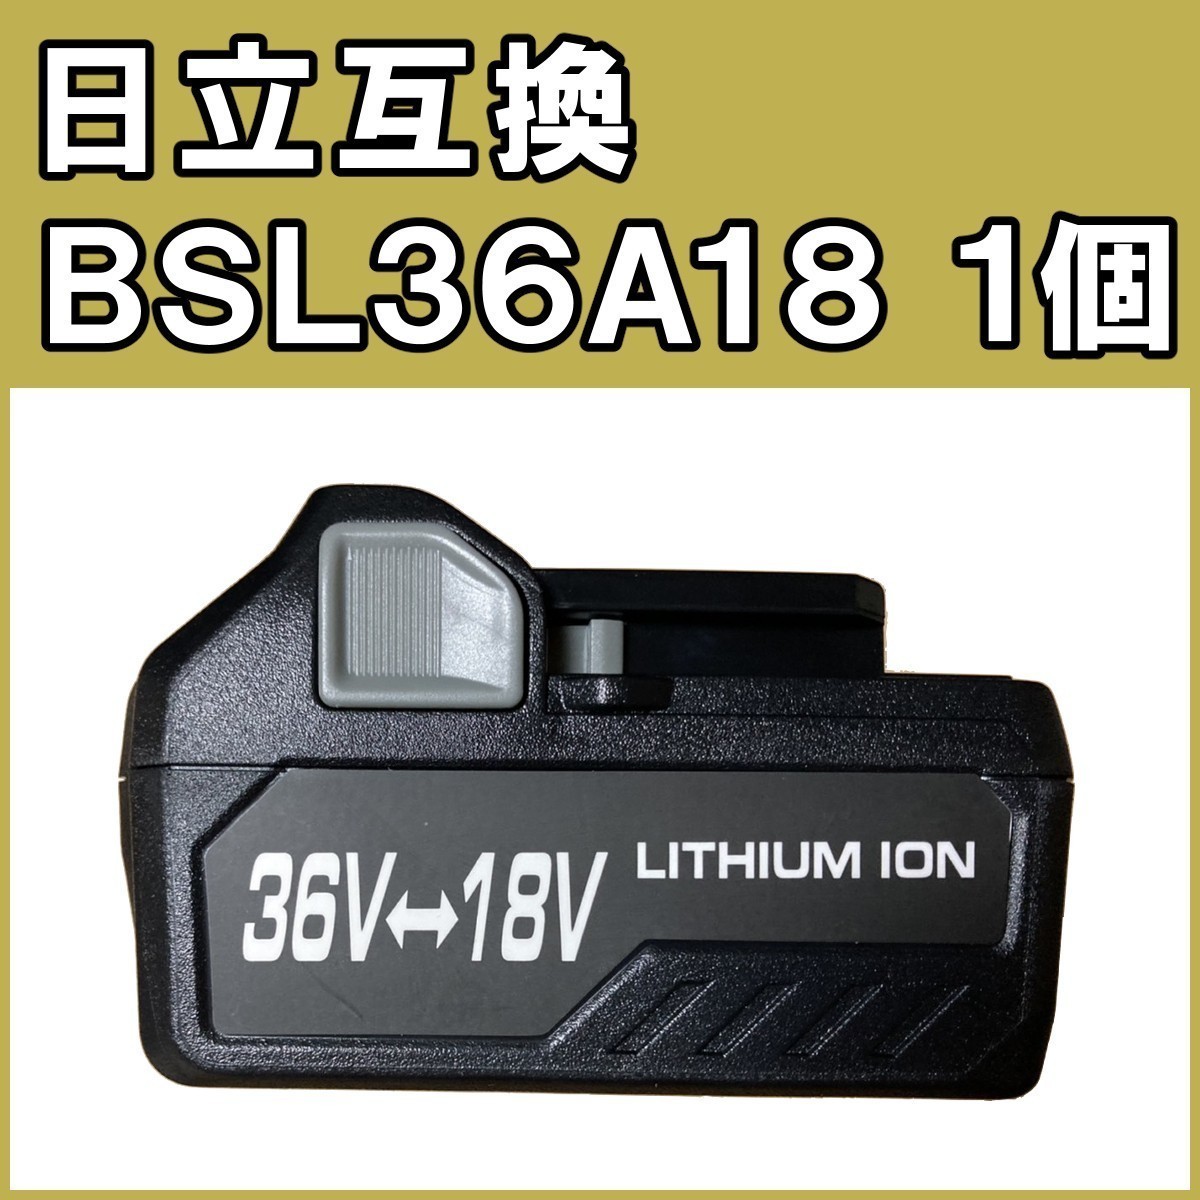 S271 日立 BSL36A18 1個 18v / 36V 5000mAh 互換バッテリー 保証付き BSL1850 BSL36 A18【BSL36A18*1個】